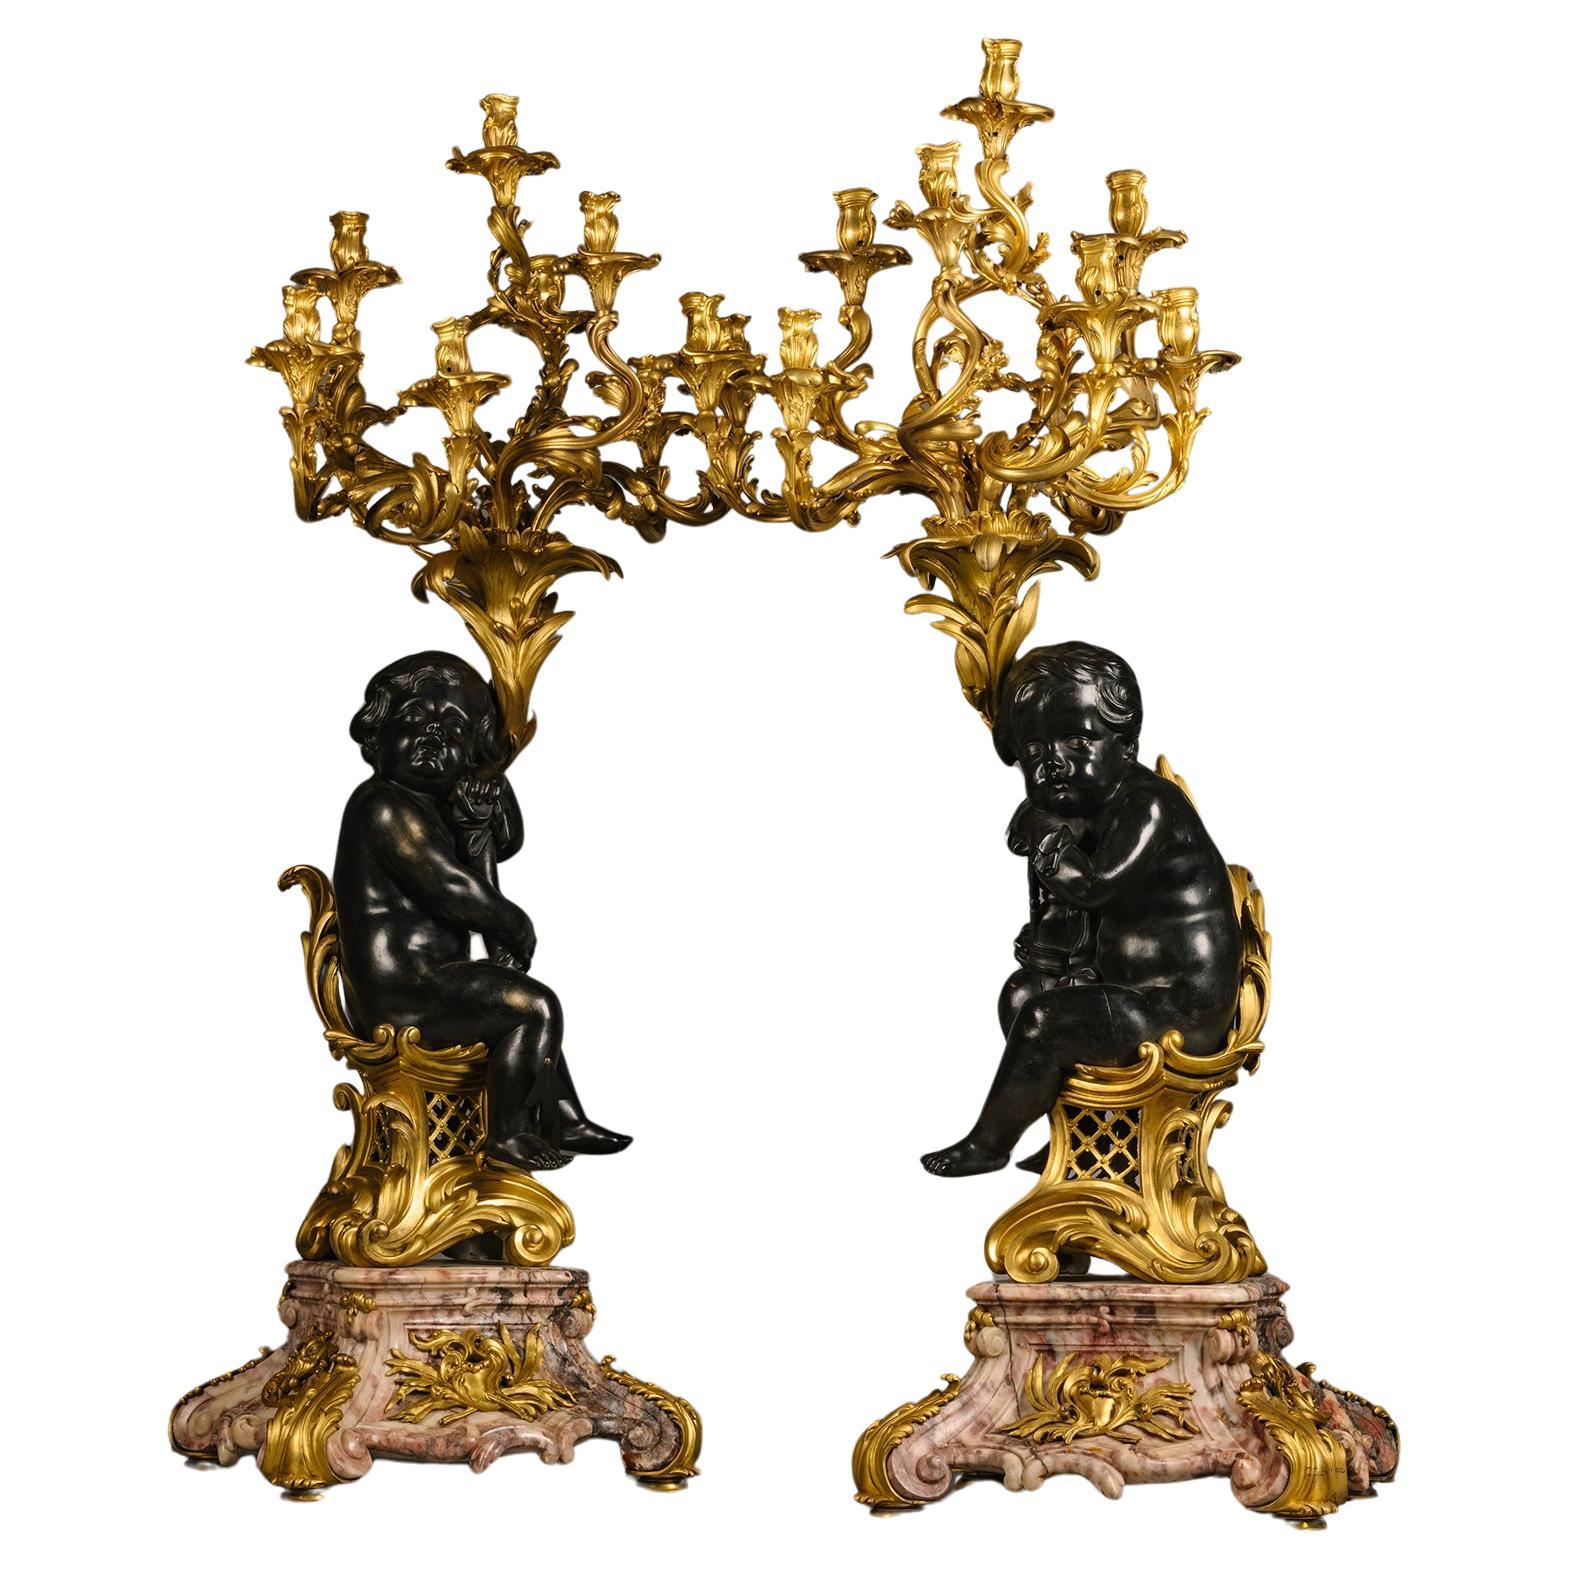 Grand candélabre figuratif de style Louis XV en bronze doré et patiné et marbre